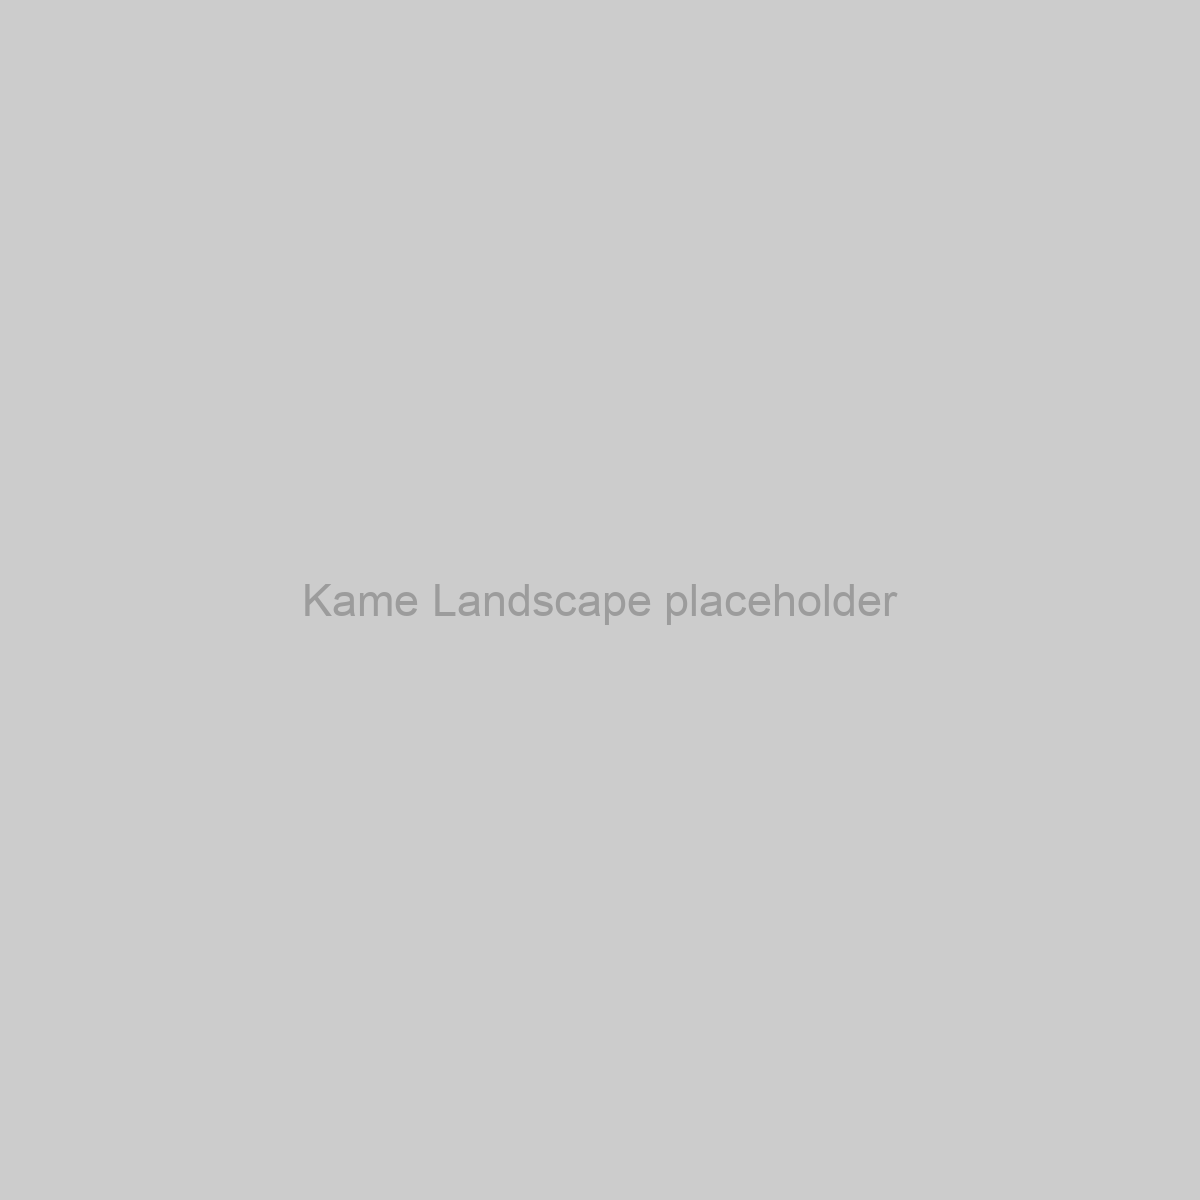 Kame Landscape Placeholder Image